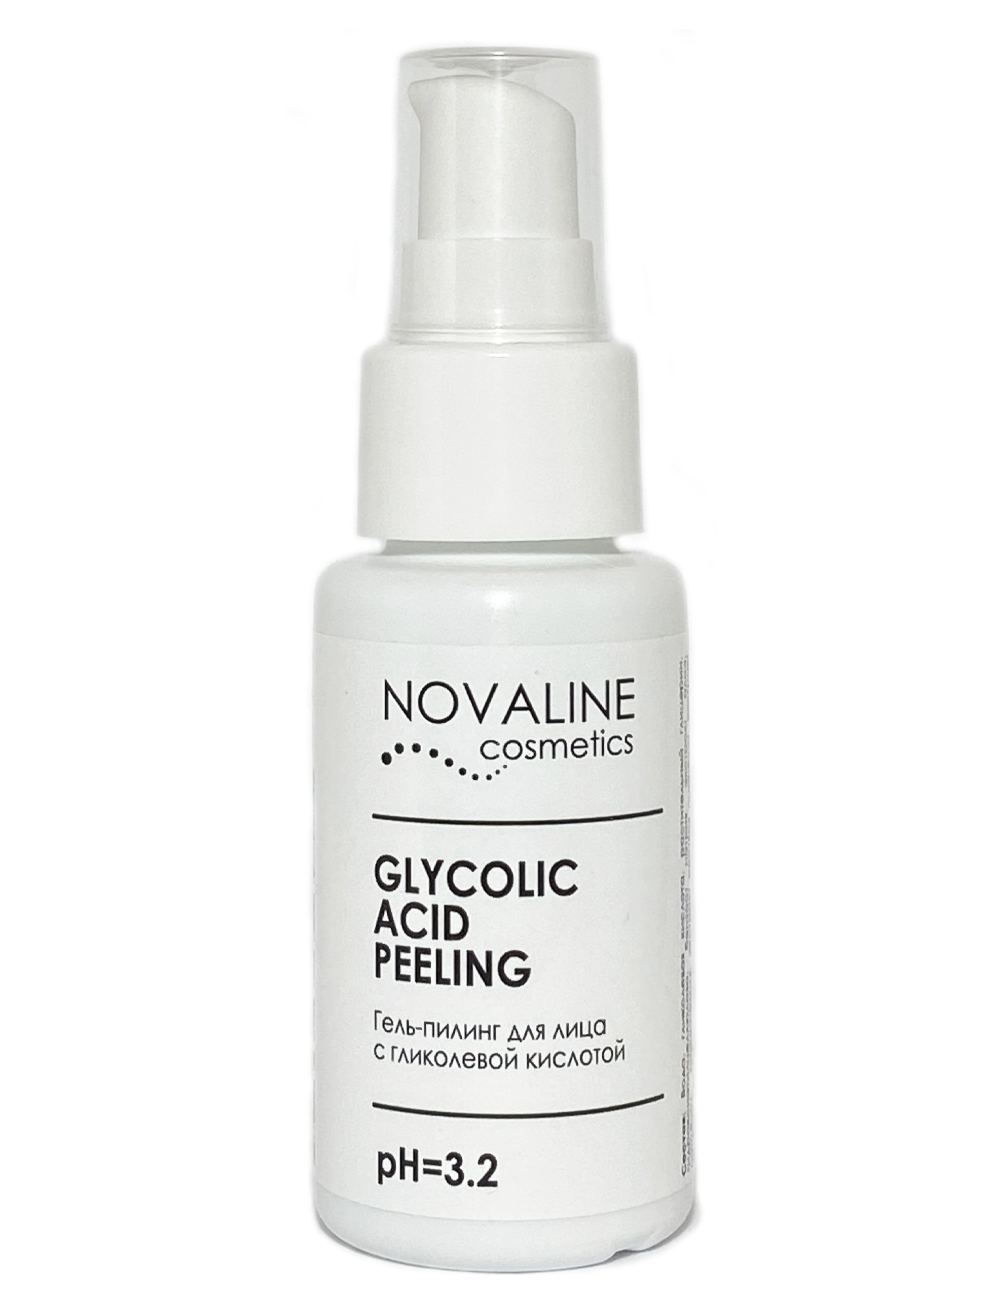 Novaline Cosmetics пилинг гидрогелевый. Гликолевая кислота пилинг PH 3,5 концентрация 10%. Дерма косметика девушка. Гликолевая кислота от пигментных пятен цена отзывы. Novaline